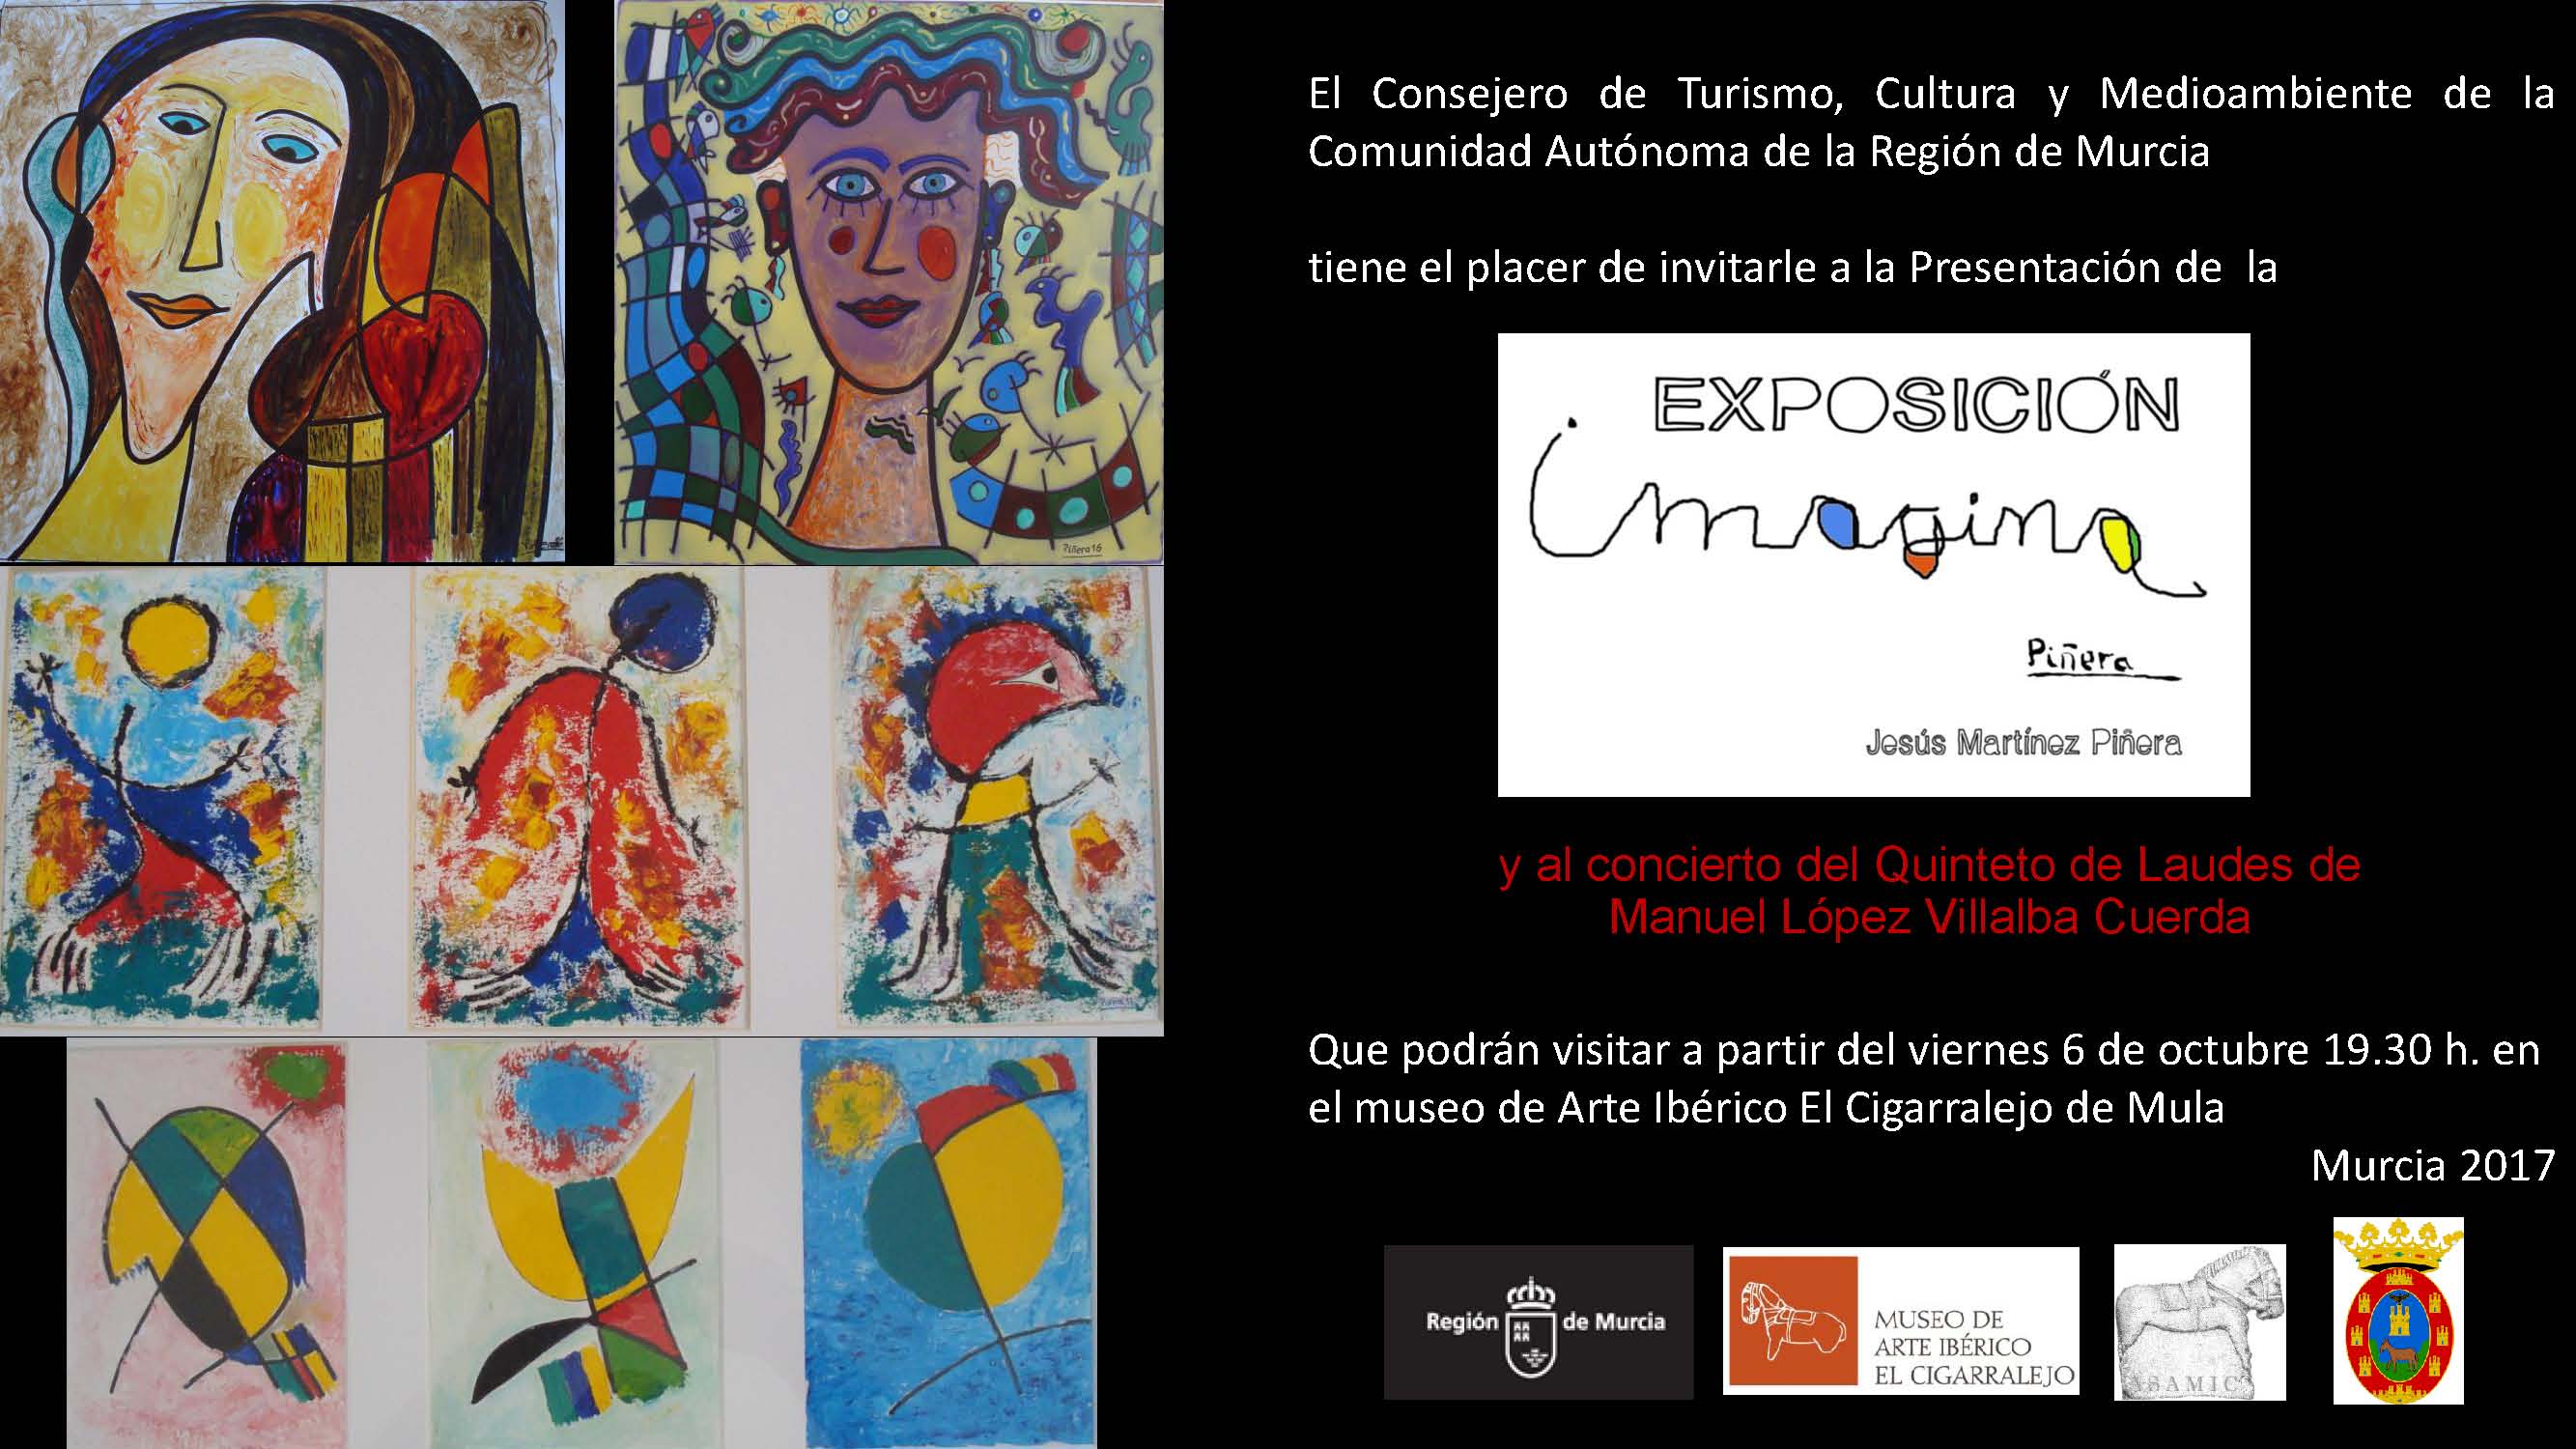 Exposición “Imagina” de Jesús Martínez Piñera en Mula